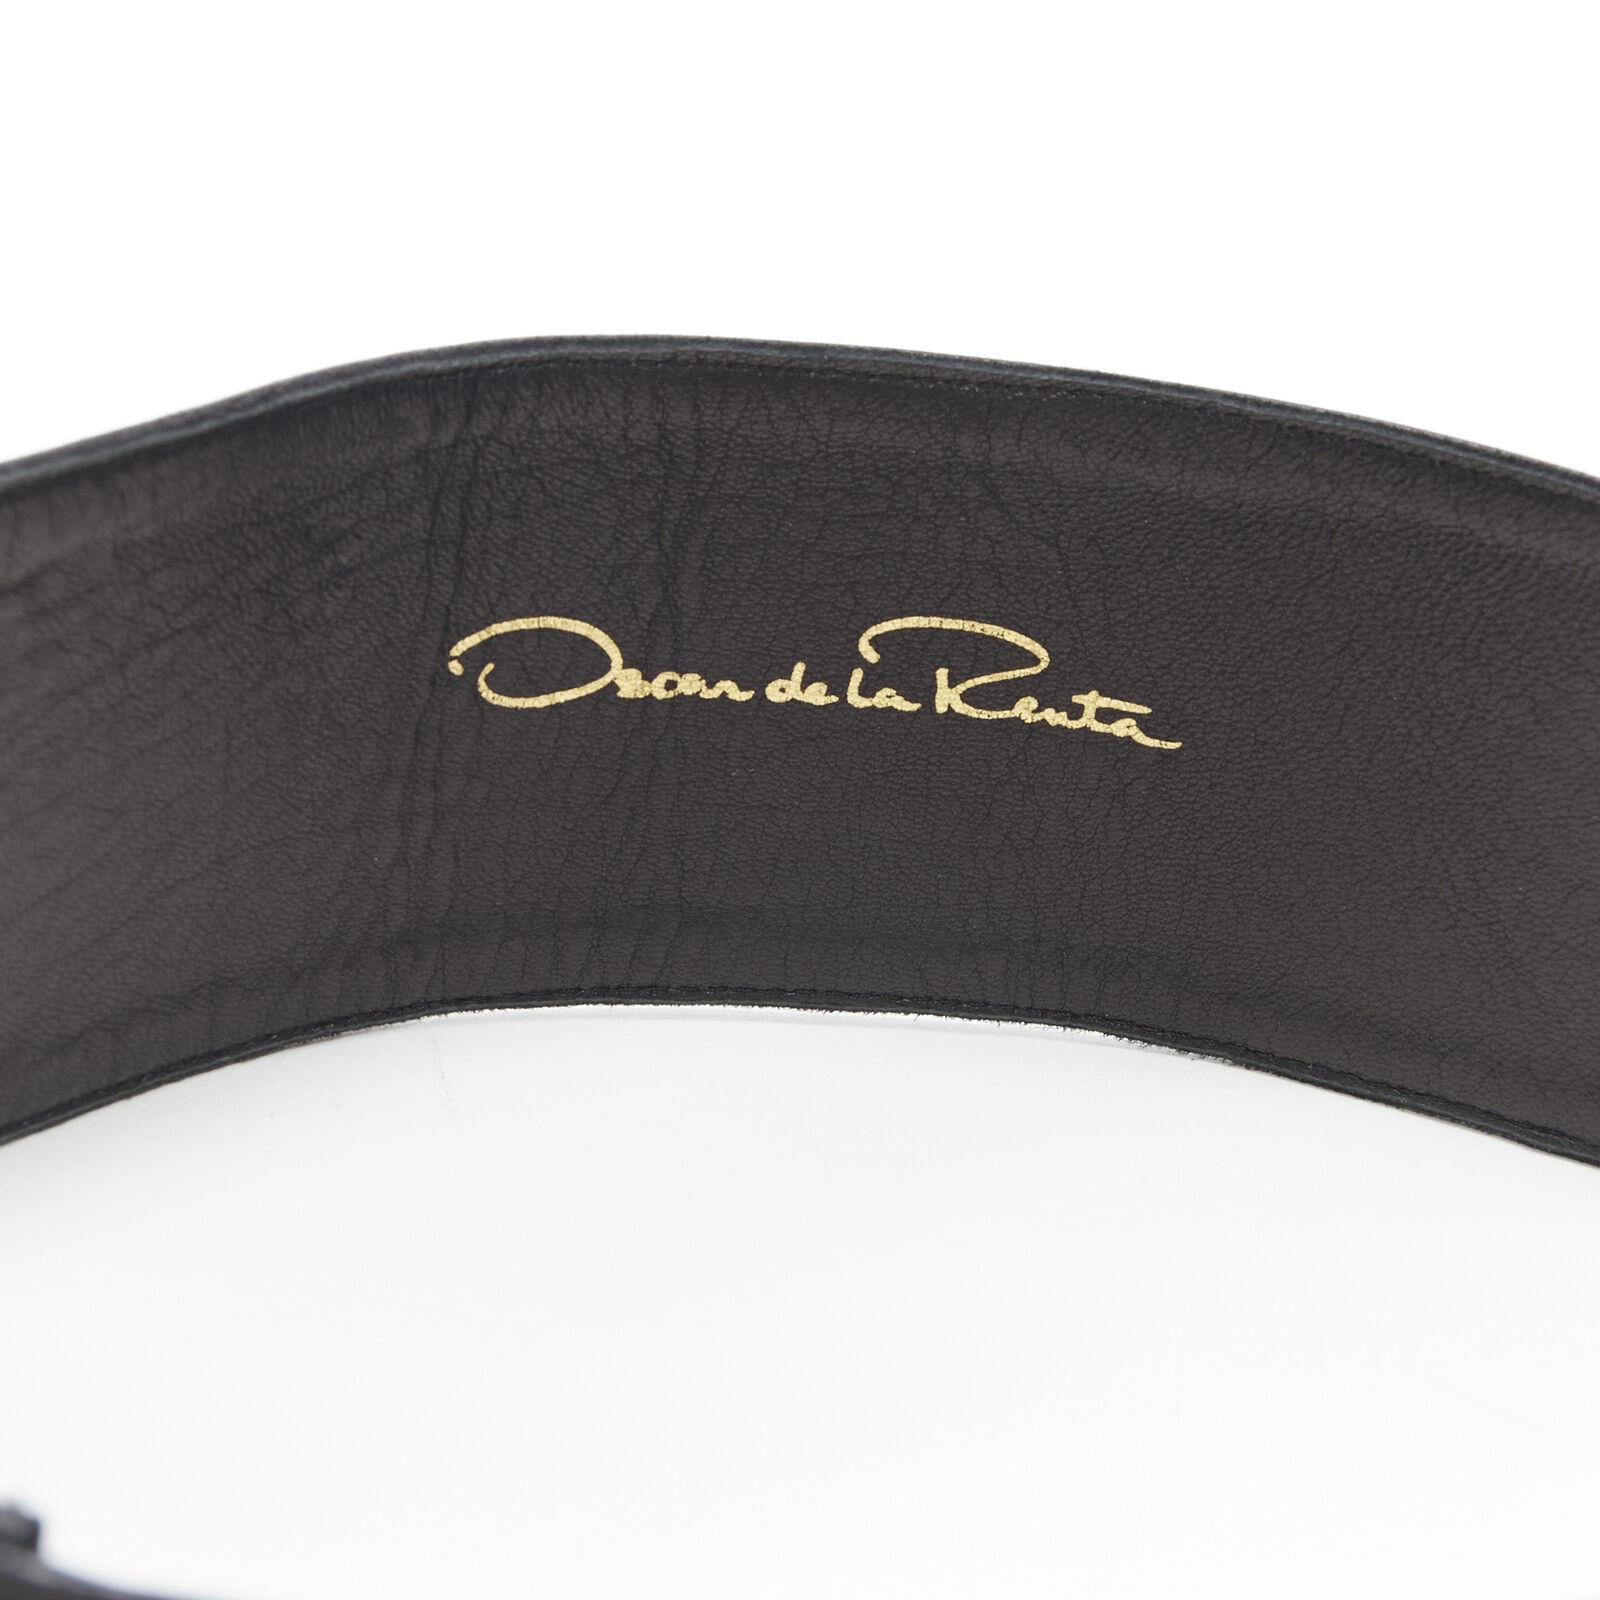 OSCAR DE LA RENTA black leather strass crystal jewel embellished belt S 27